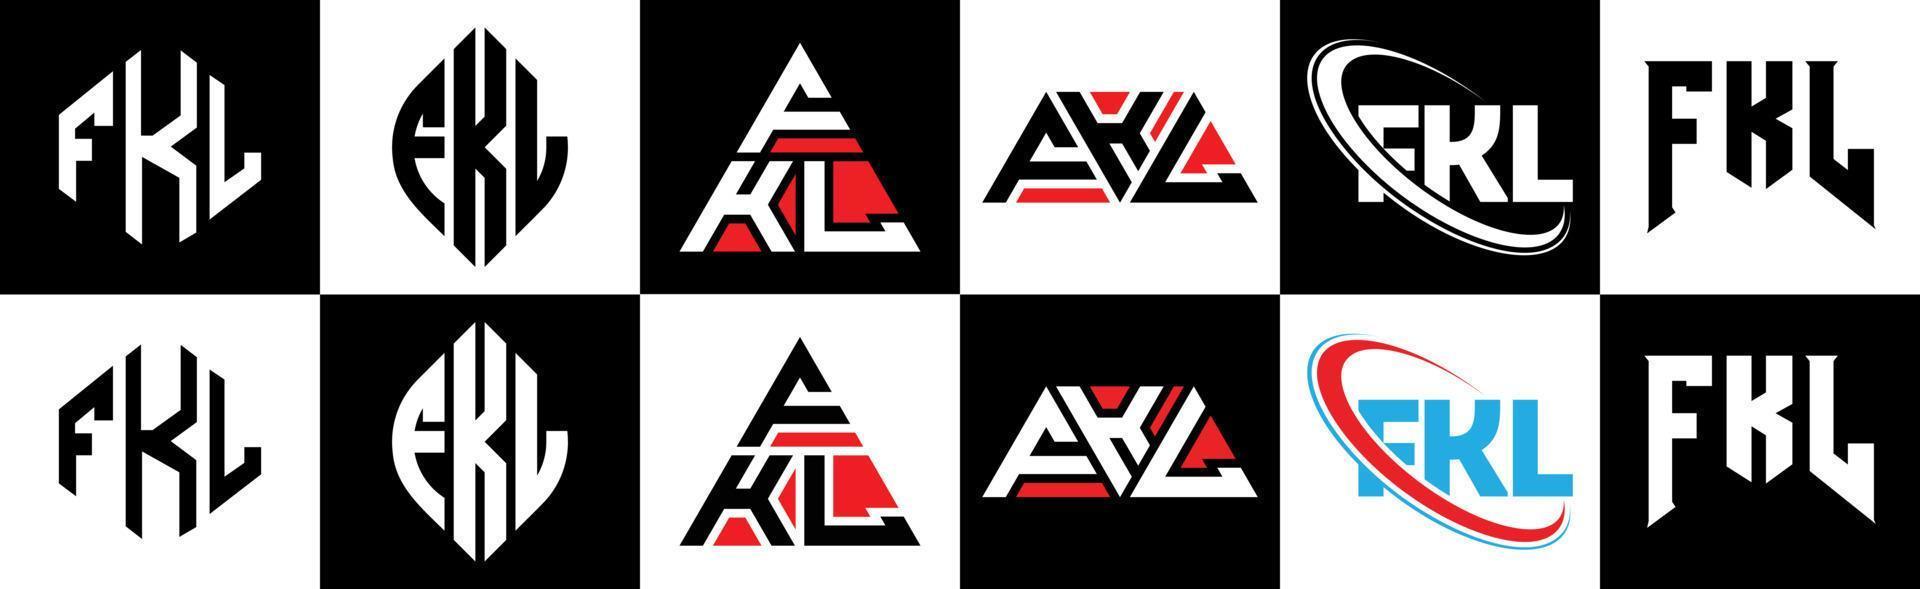 fkl-Buchstaben-Logo-Design in sechs Stilen. fkl Polygon, Kreis, Dreieck, Sechseck, flacher und einfacher Stil mit schwarz-weißem Buchstabenlogo in einer Zeichenfläche. fkl minimalistisches und klassisches Logo vektor